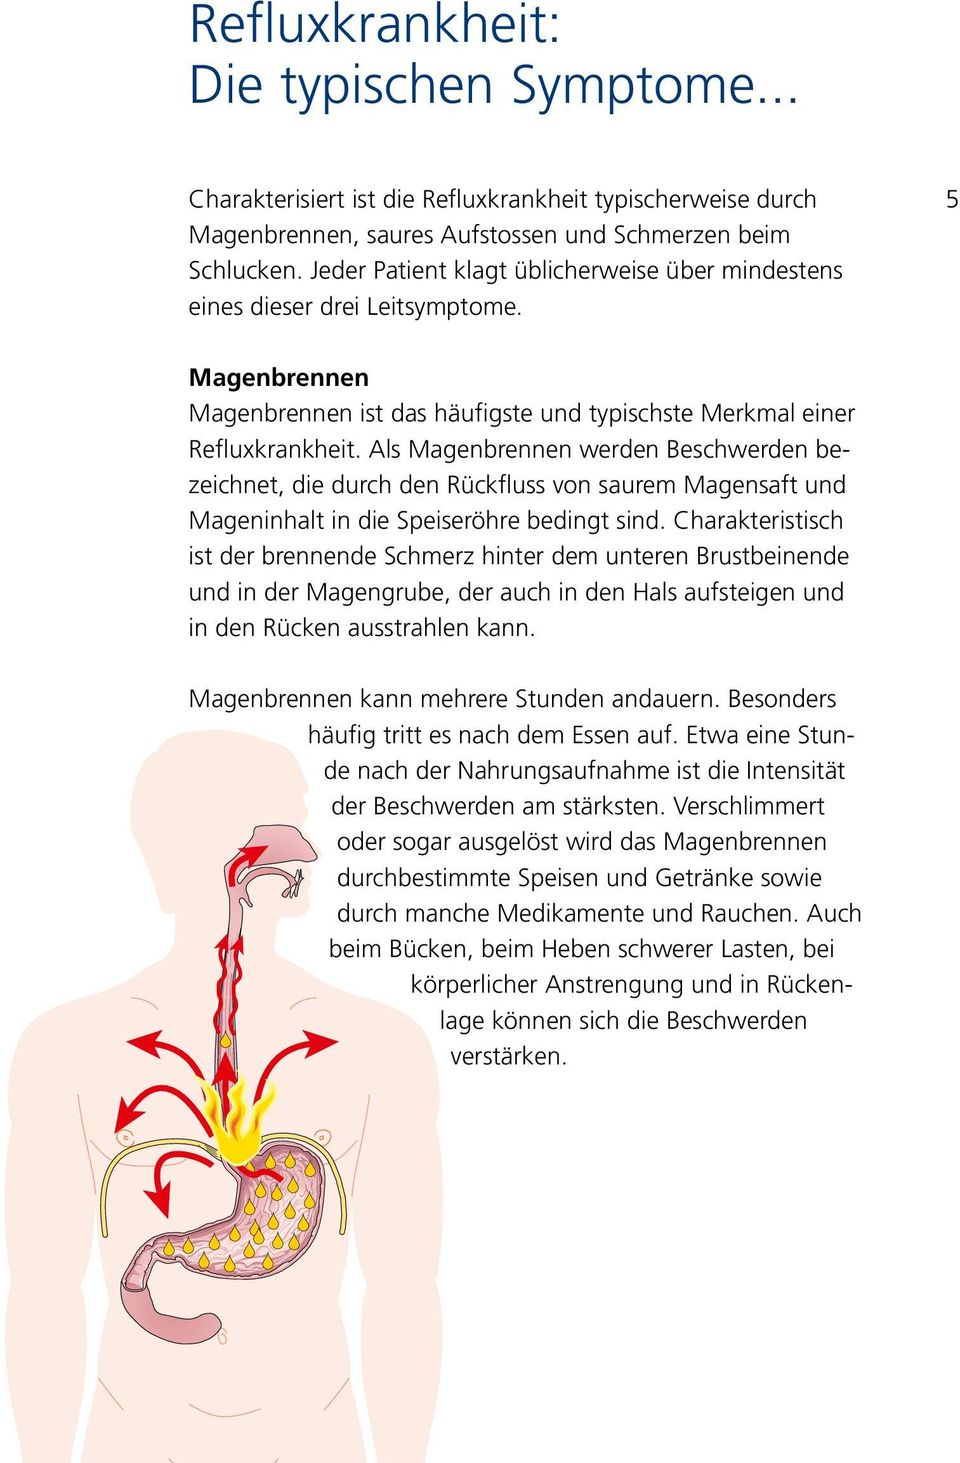 Als Magenbrennen werden Beschwerden bezeichnet, die durch den Rückfluss von saurem Magensaft und Mageninhalt in die Speiseröhre bedingt sind.